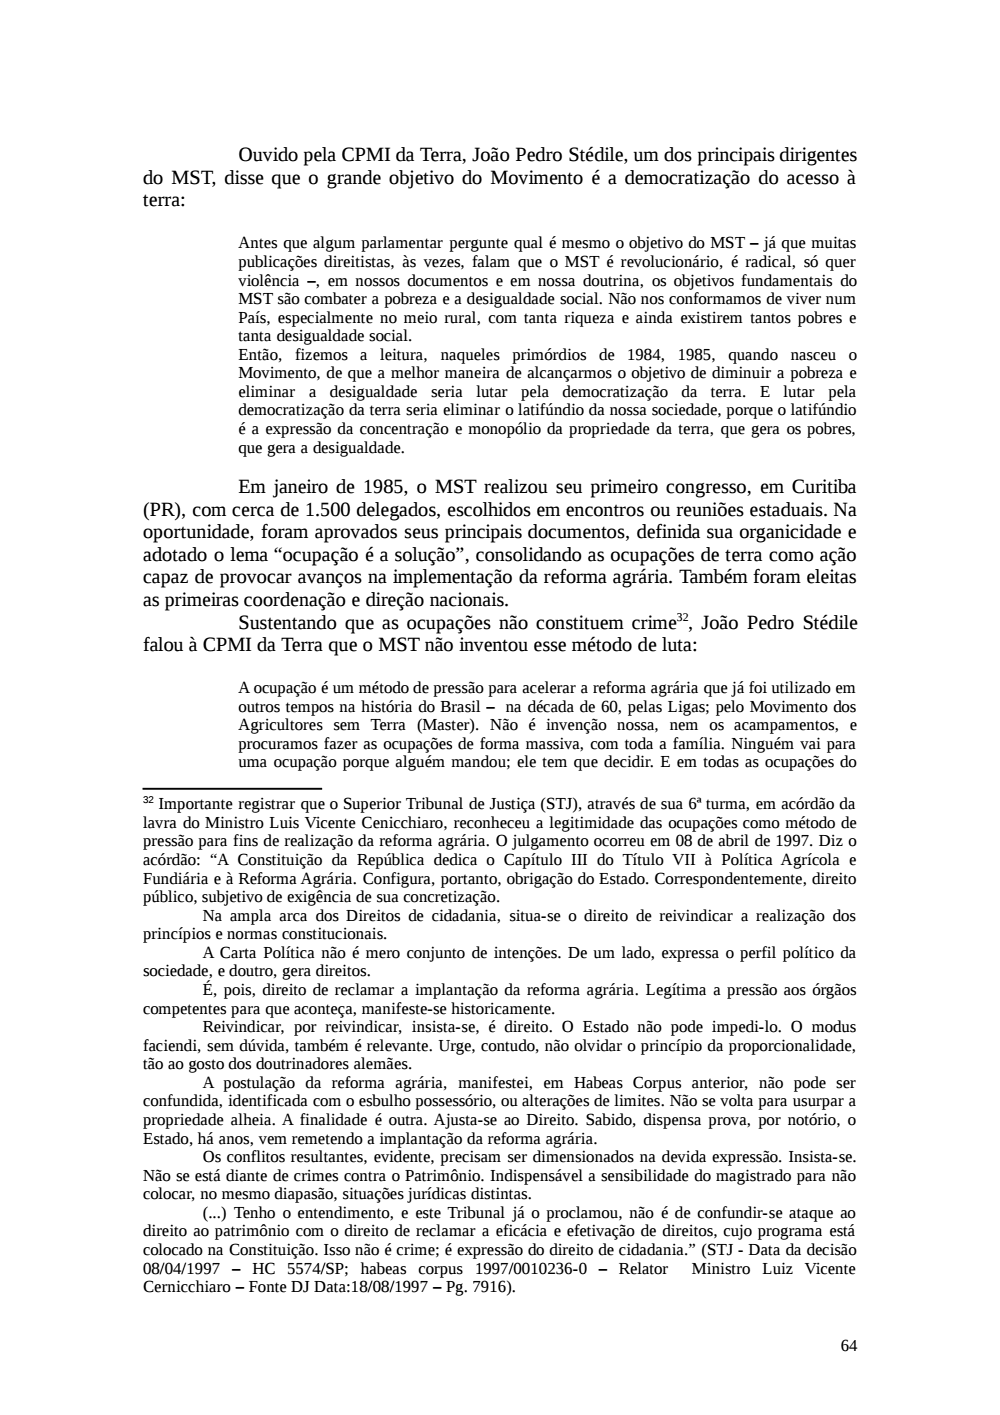 Page 64 from Relatório final da comissão